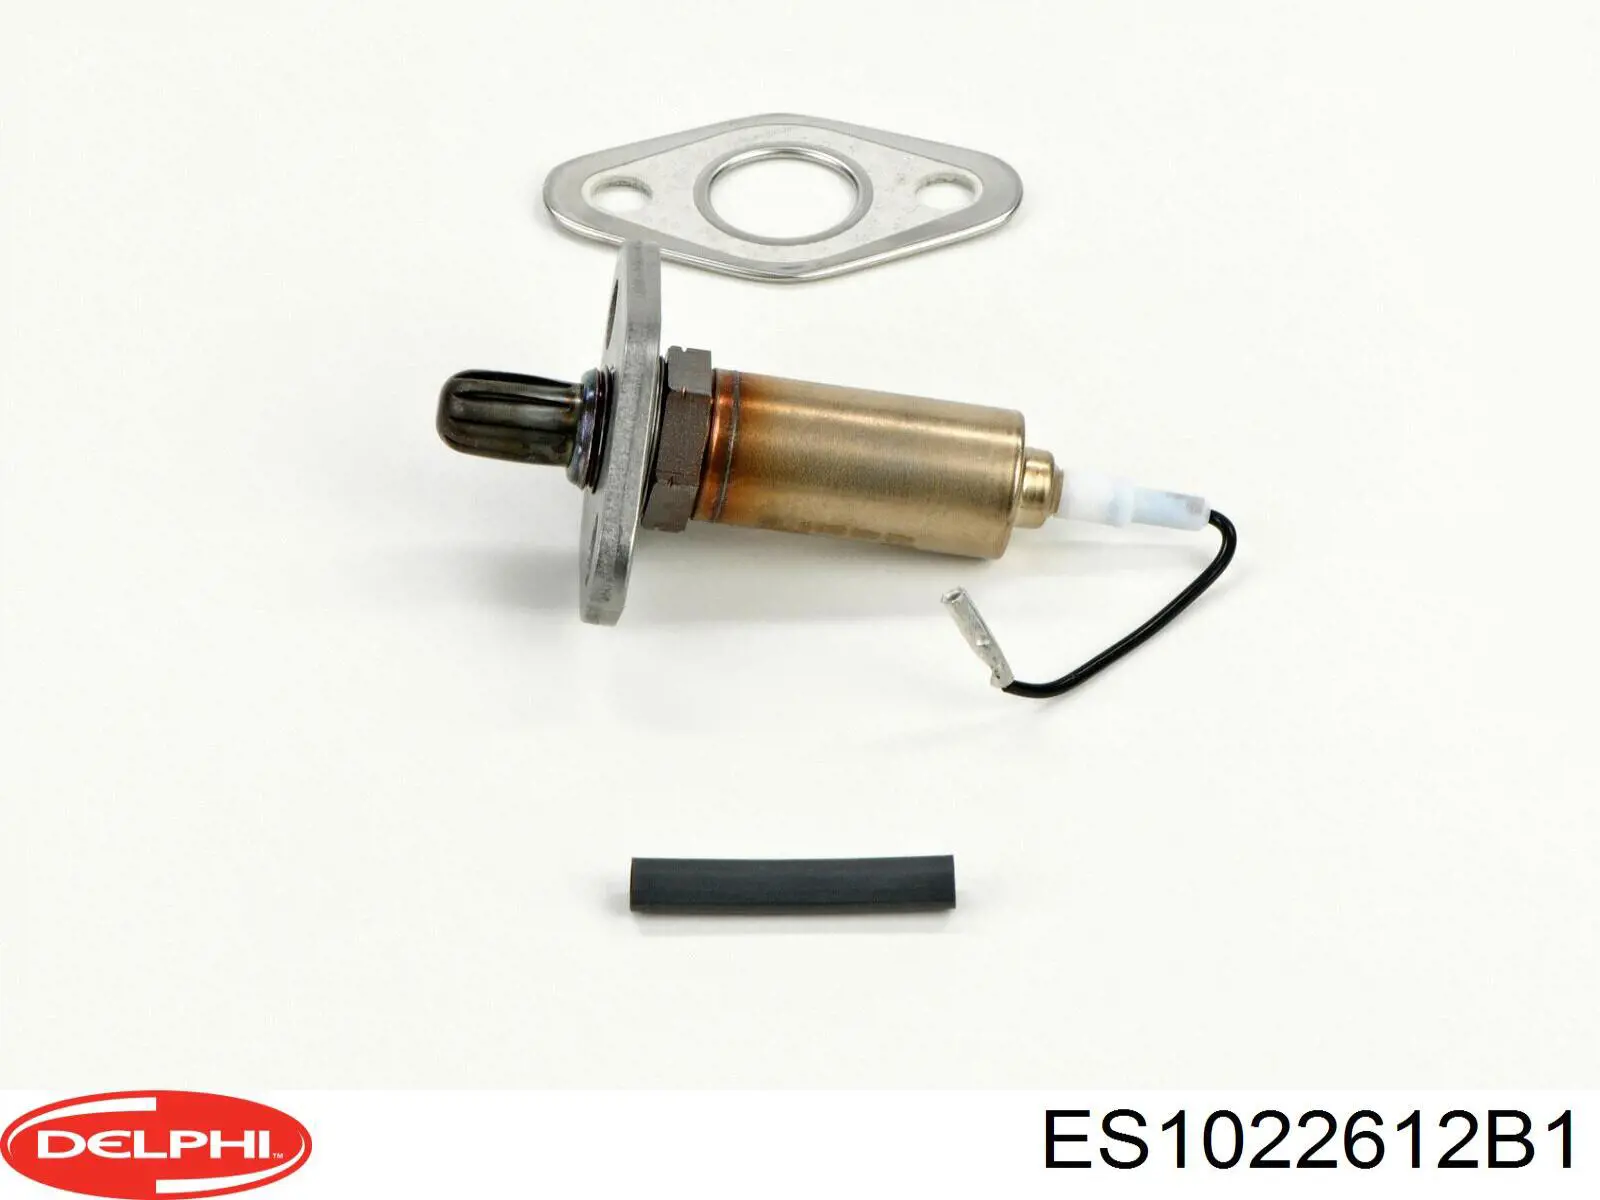 ES1022612B1 Delphi sonda lambda sensor de oxigeno para catalizador